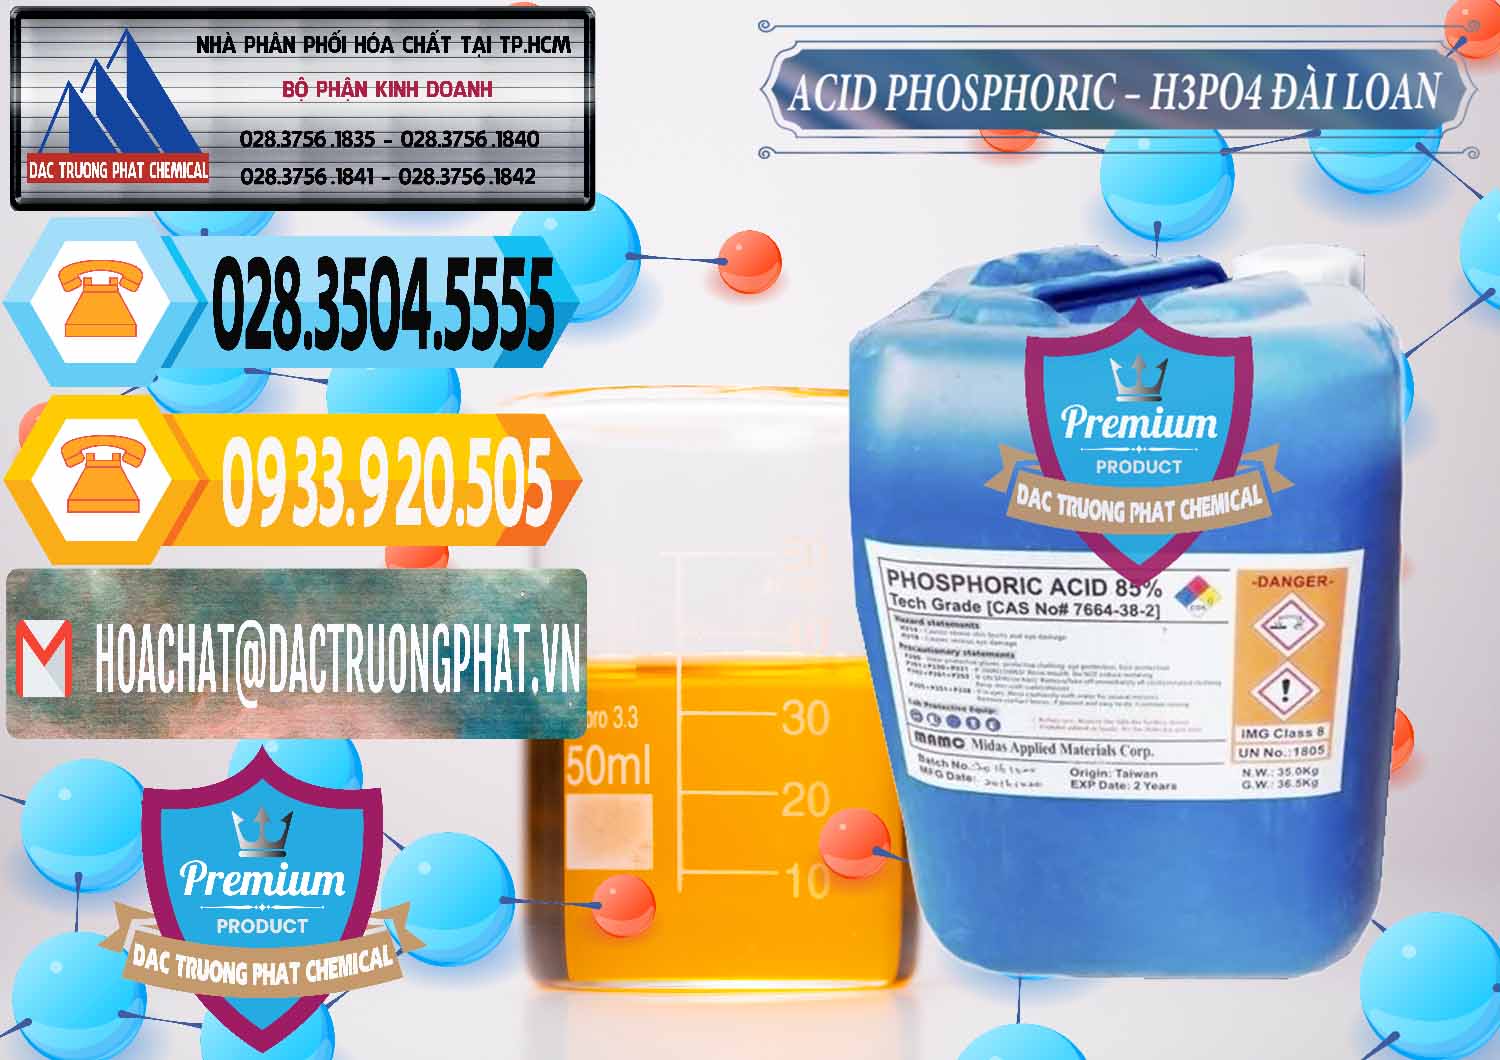 Cty kinh doanh & bán Axit Phosphoric - Acid Phosphoric H3PO4 85% Đài Loan Taiwan - 0351 - Chuyên phân phối - nhập khẩu hóa chất tại TP.HCM - hoachattayrua.net